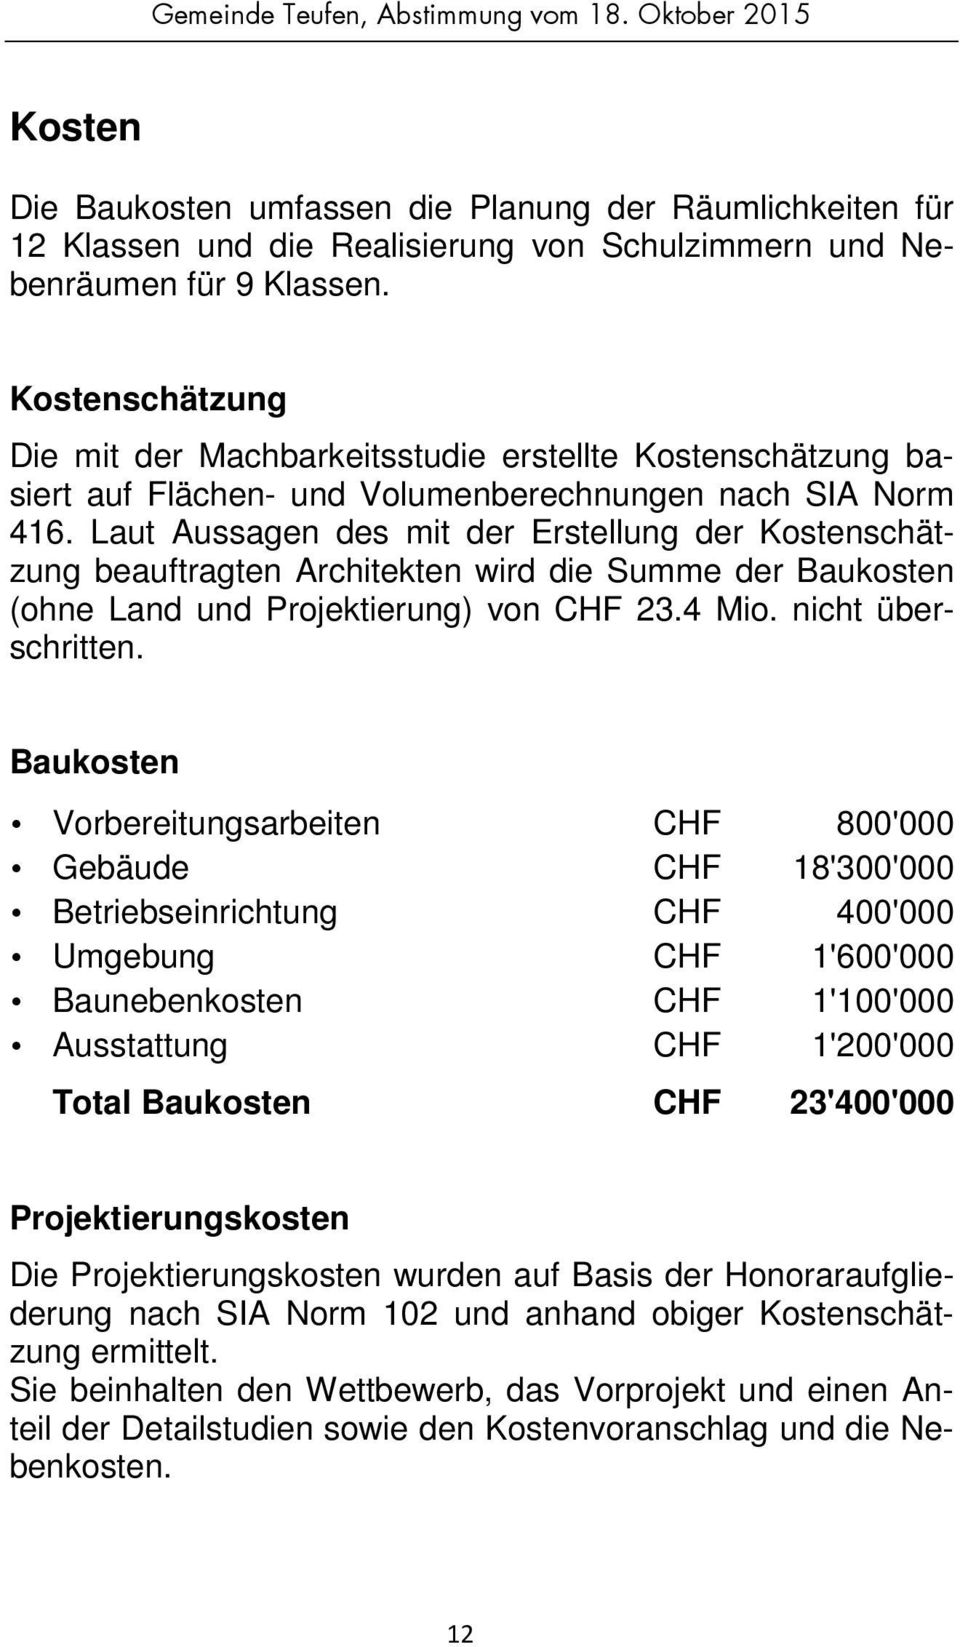 Laut Aussagen des mit der Erstellung der Kostenschätzung beauftragten Architekten wird die Summe der Baukosten (ohne Land und Projektierung) von CHF 23.4 Mio. nicht überschritten.